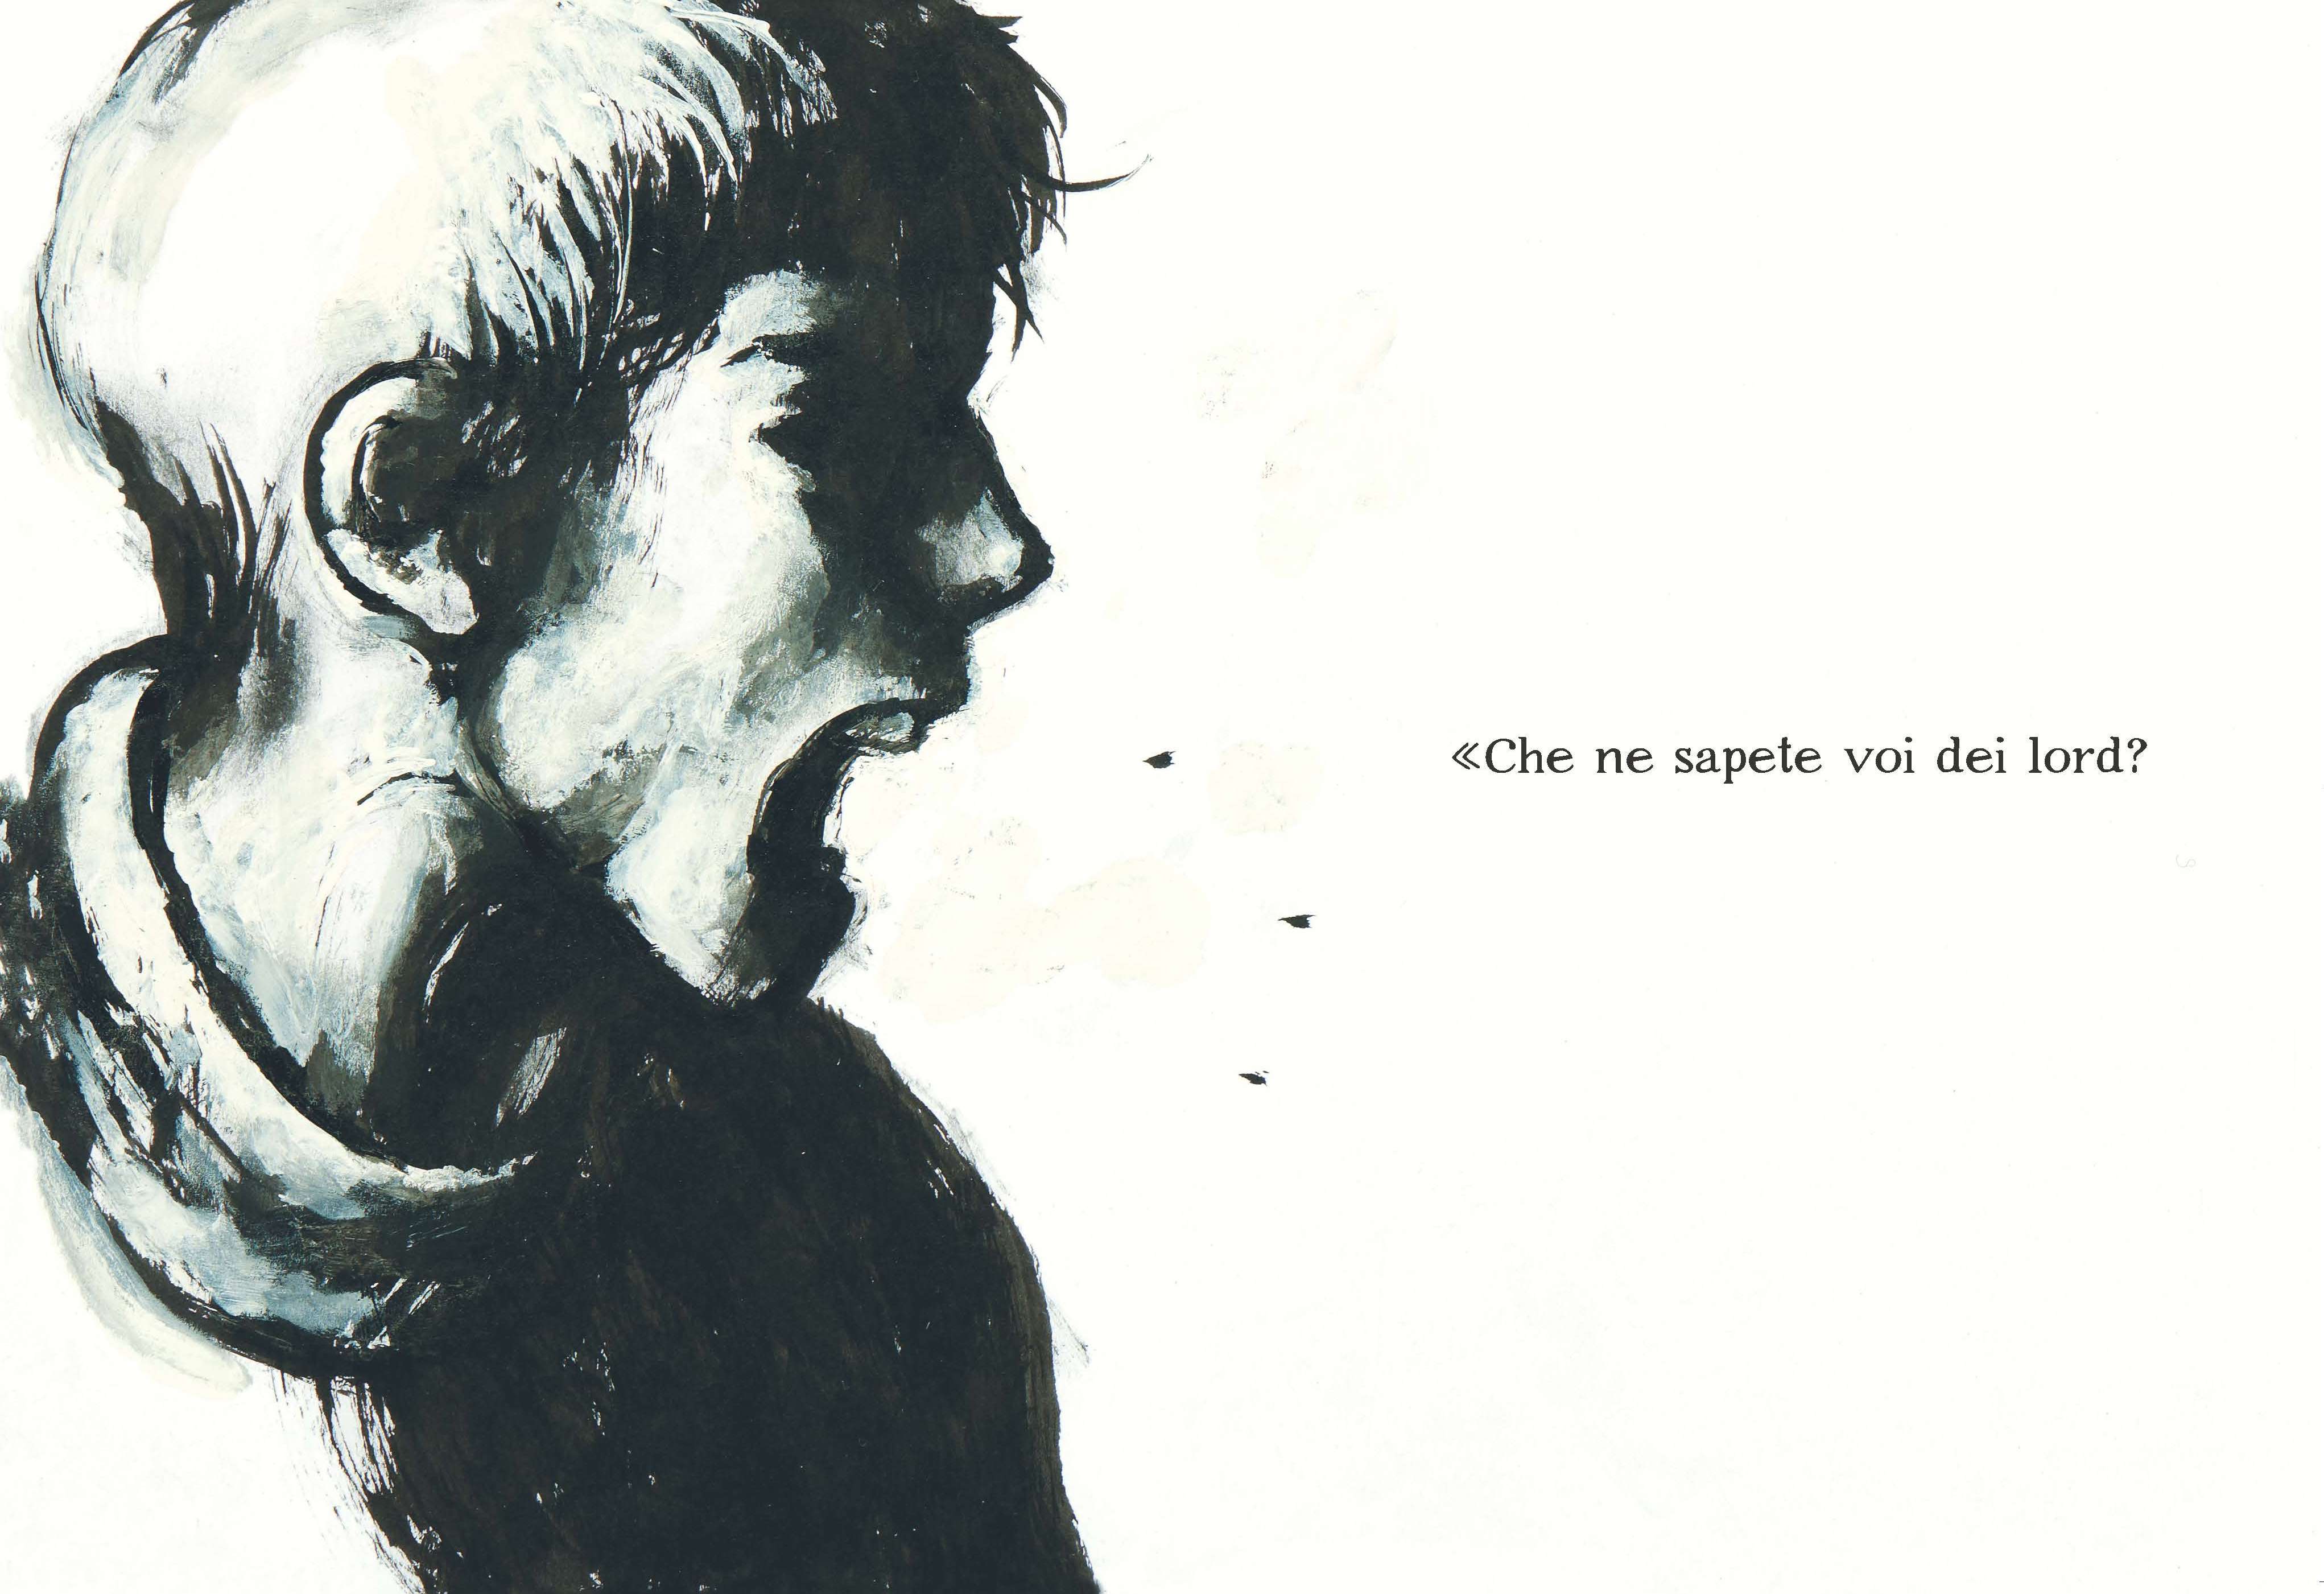 "Ho remato per un lord", di Stig Dagerman, disegni di Davide Reviati (Coconino Press - Else)